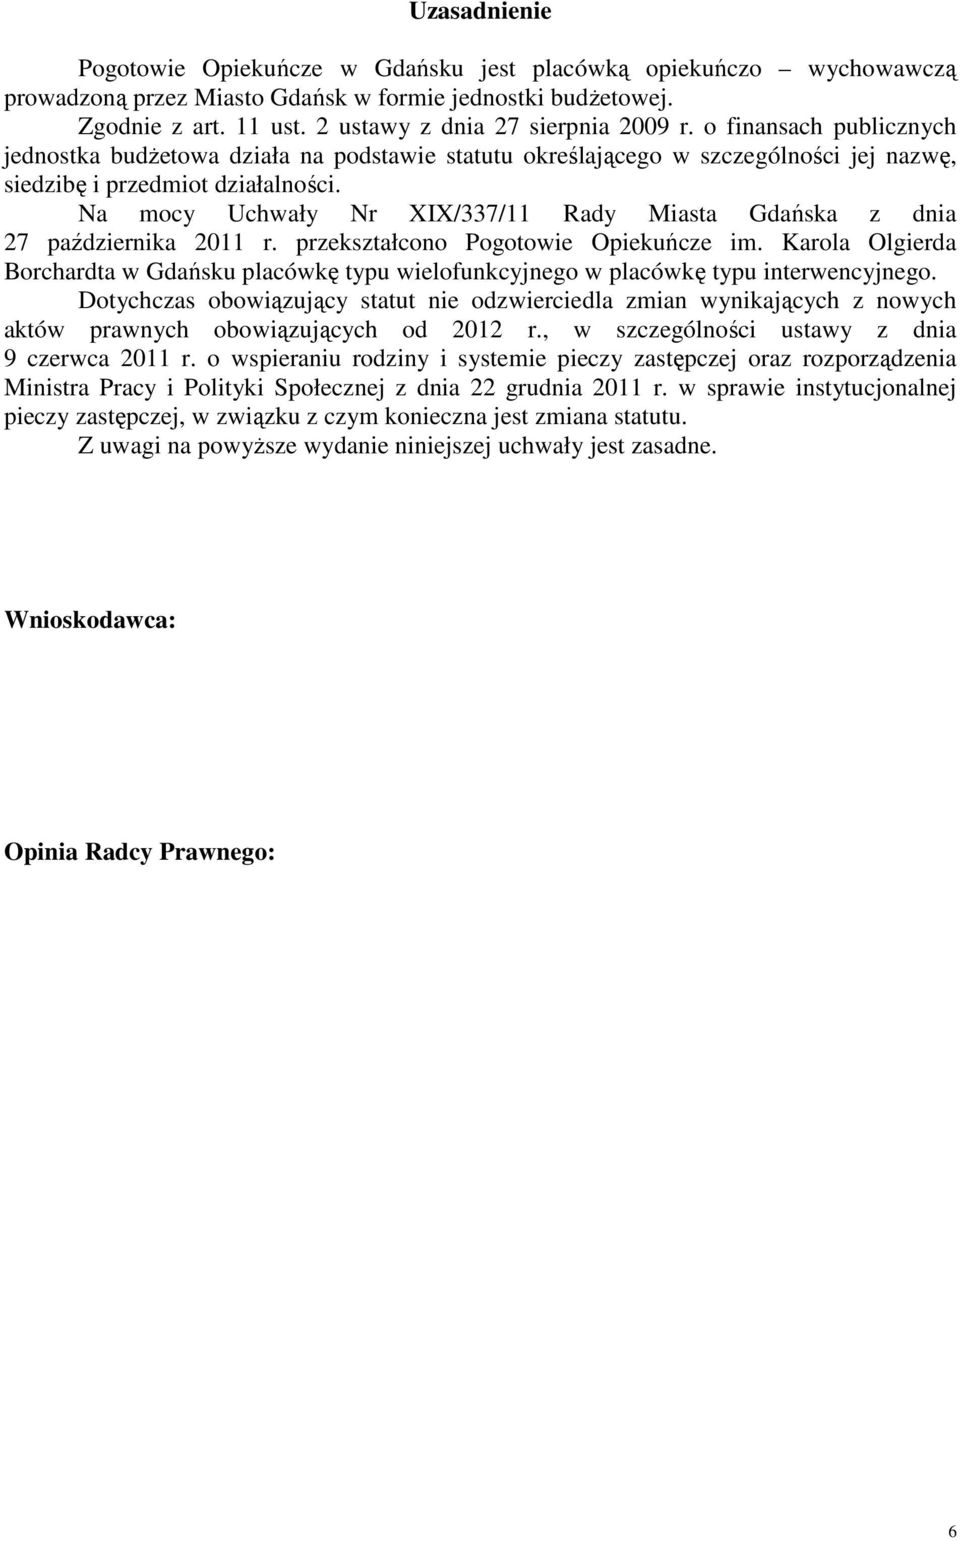 Na mocy Uchwały Nr XIX/337/11 Rady Miasta Gdańska z dnia 27 października 2011 r. przekształcono Pogotowie Opiekuńcze im.